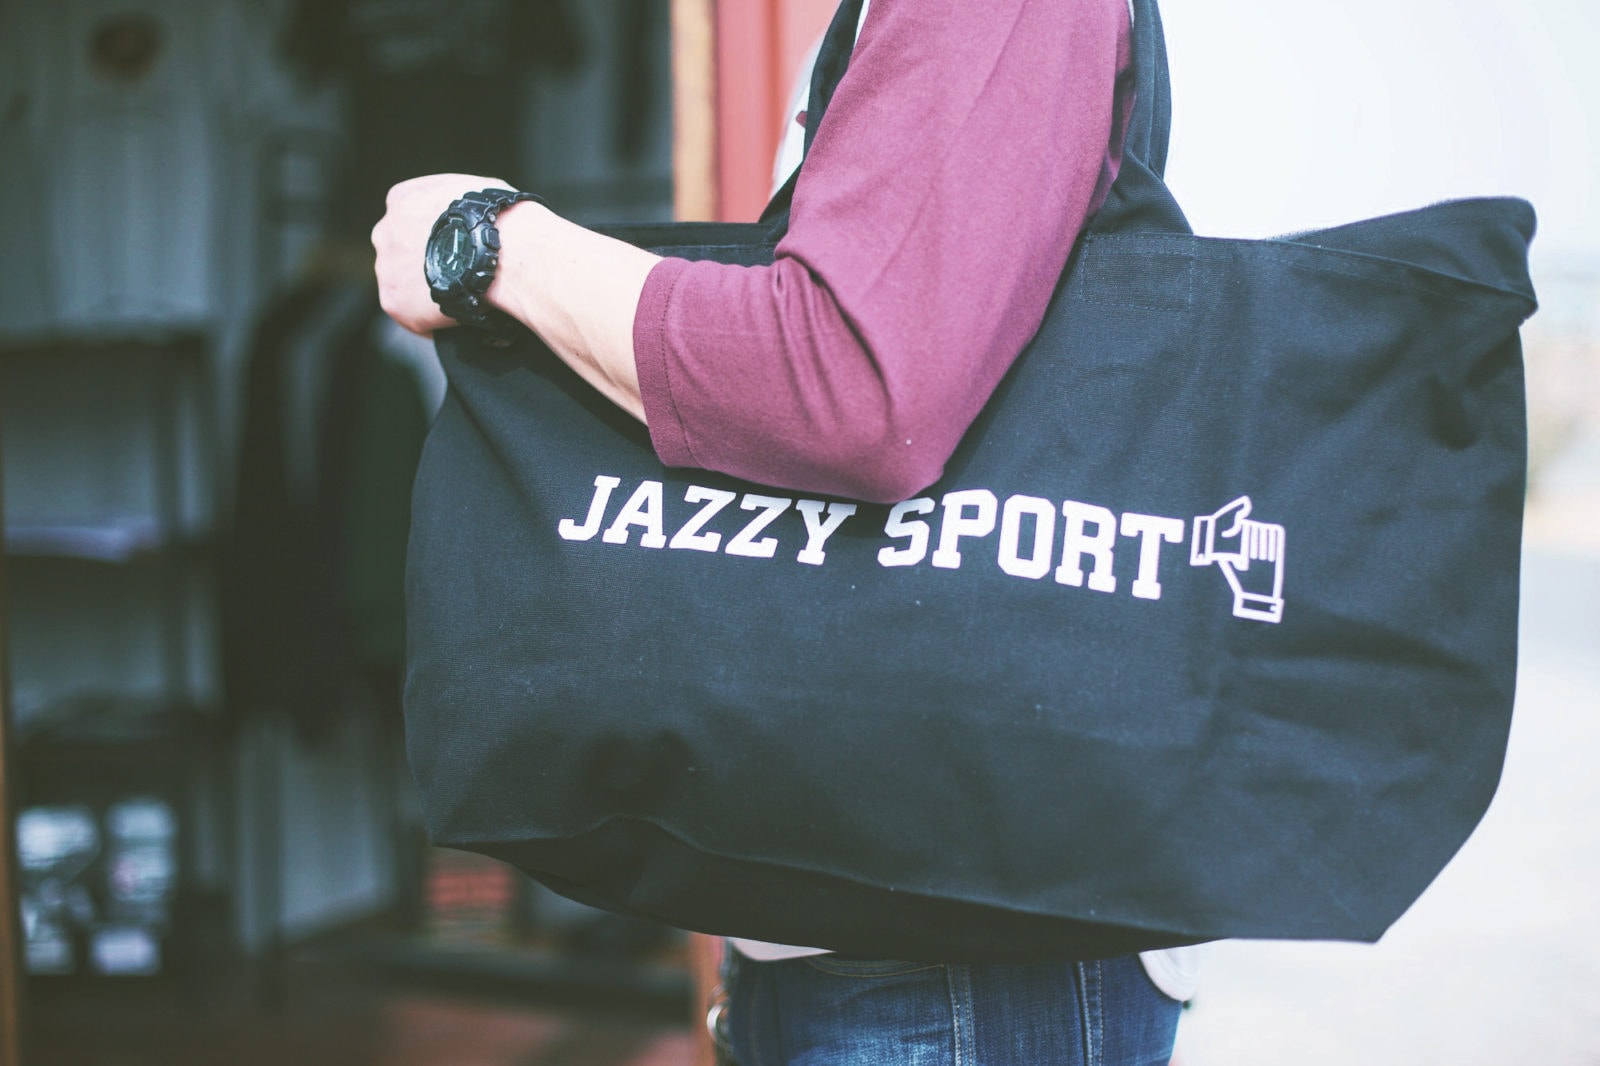 jazzy sport popup shop